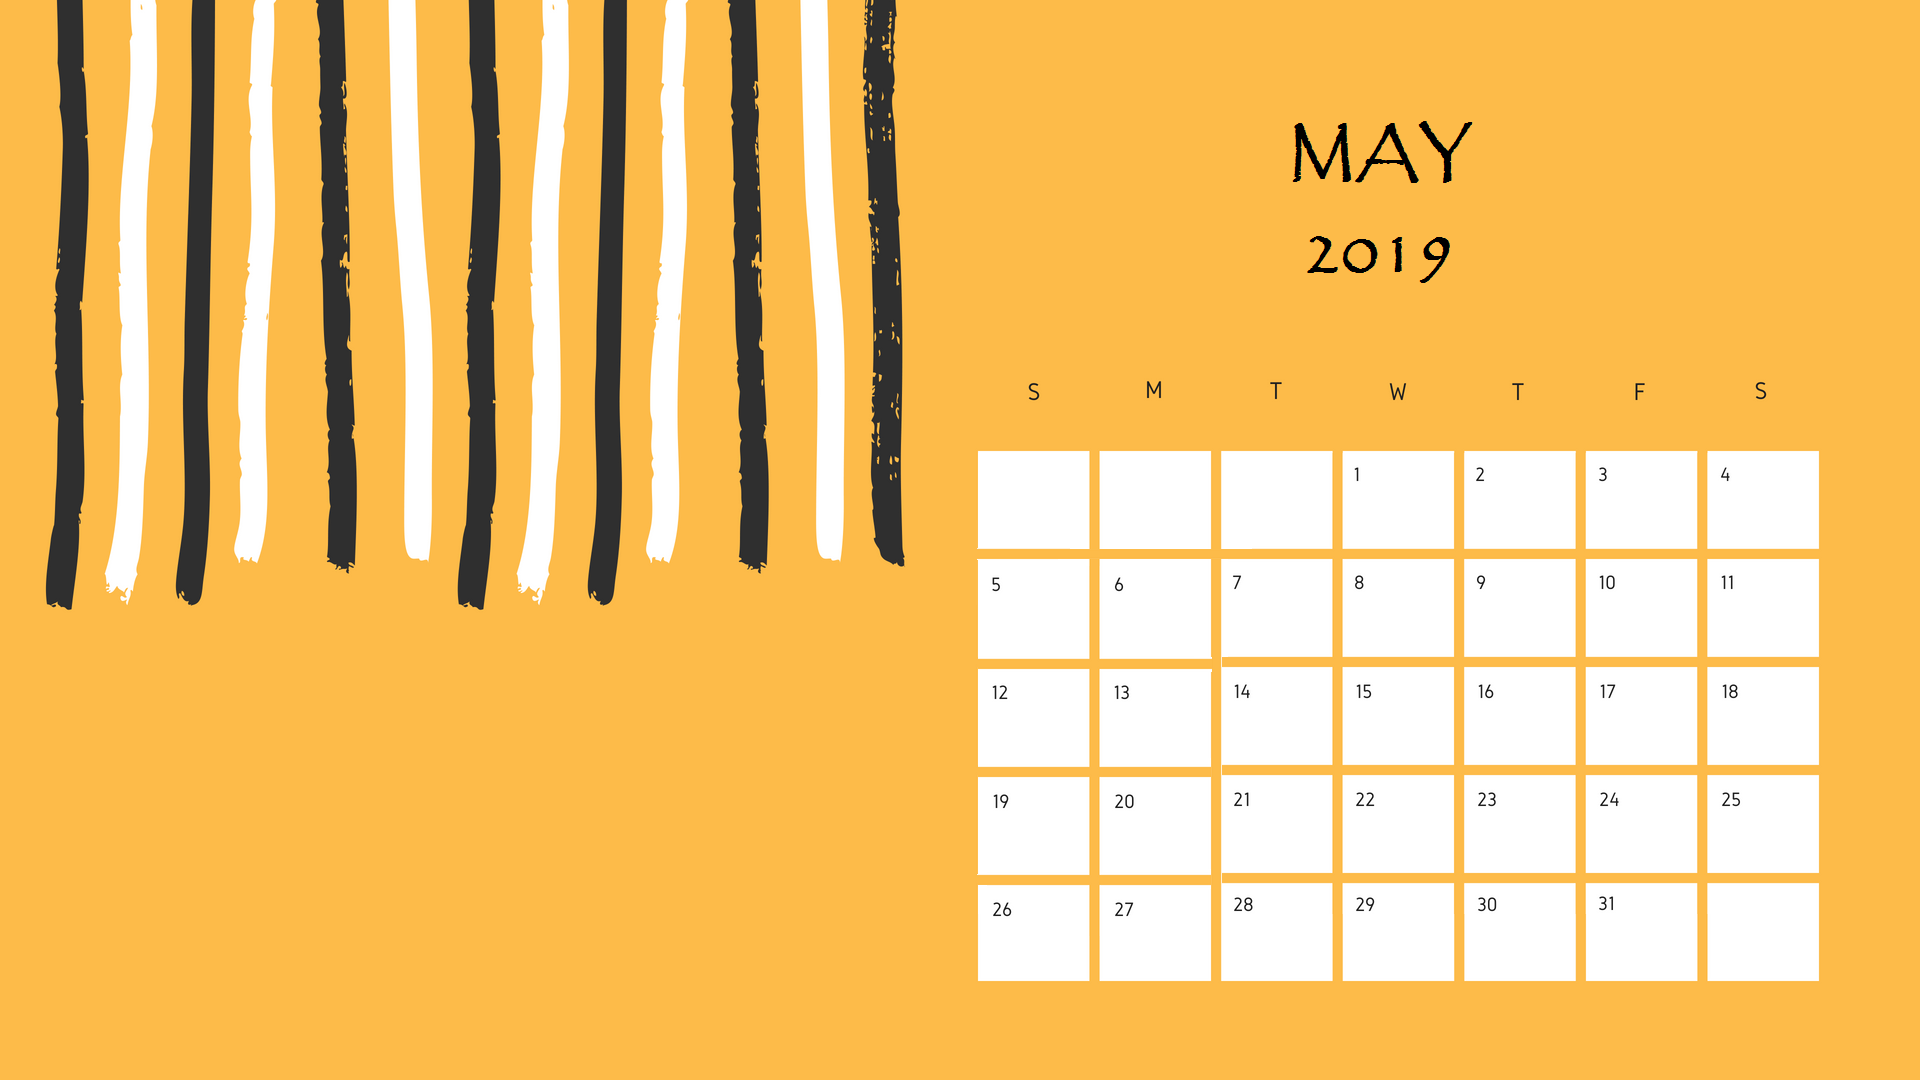 Download May 2019 Printable Calendar